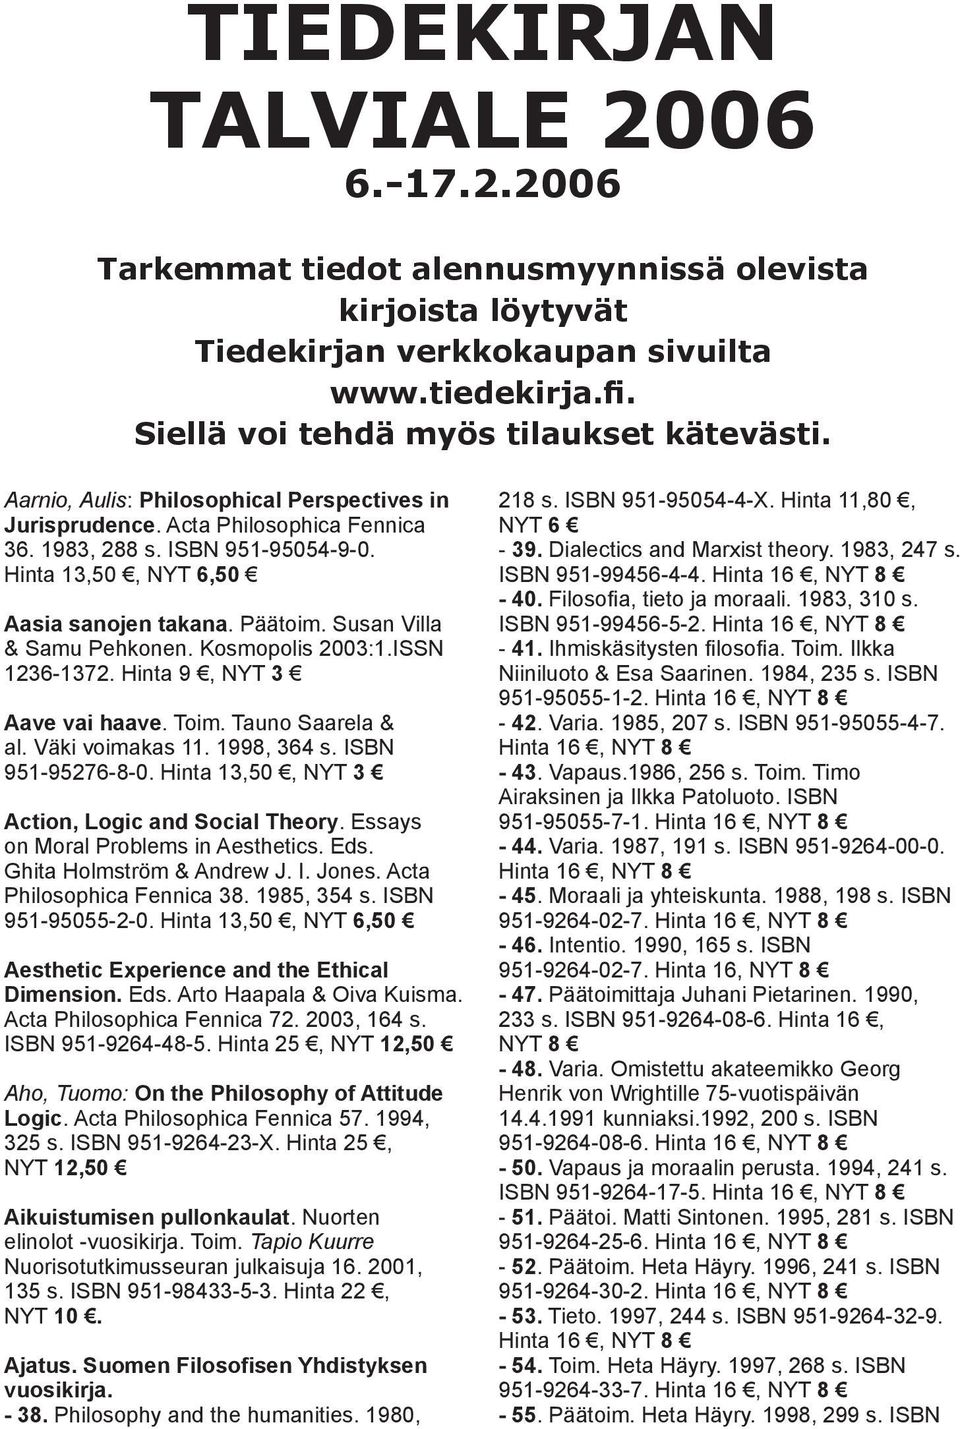 Susan Villa & Samu Pehkonen. Kosmopolis 2003:1.ISSN 1236-1372. Hinta 9, NYT 3 Aave vai haave. Toim. Tauno Saarela & al. Väki voimakas 11. 1998, 364 s. ISBN 951-95276-8-0.